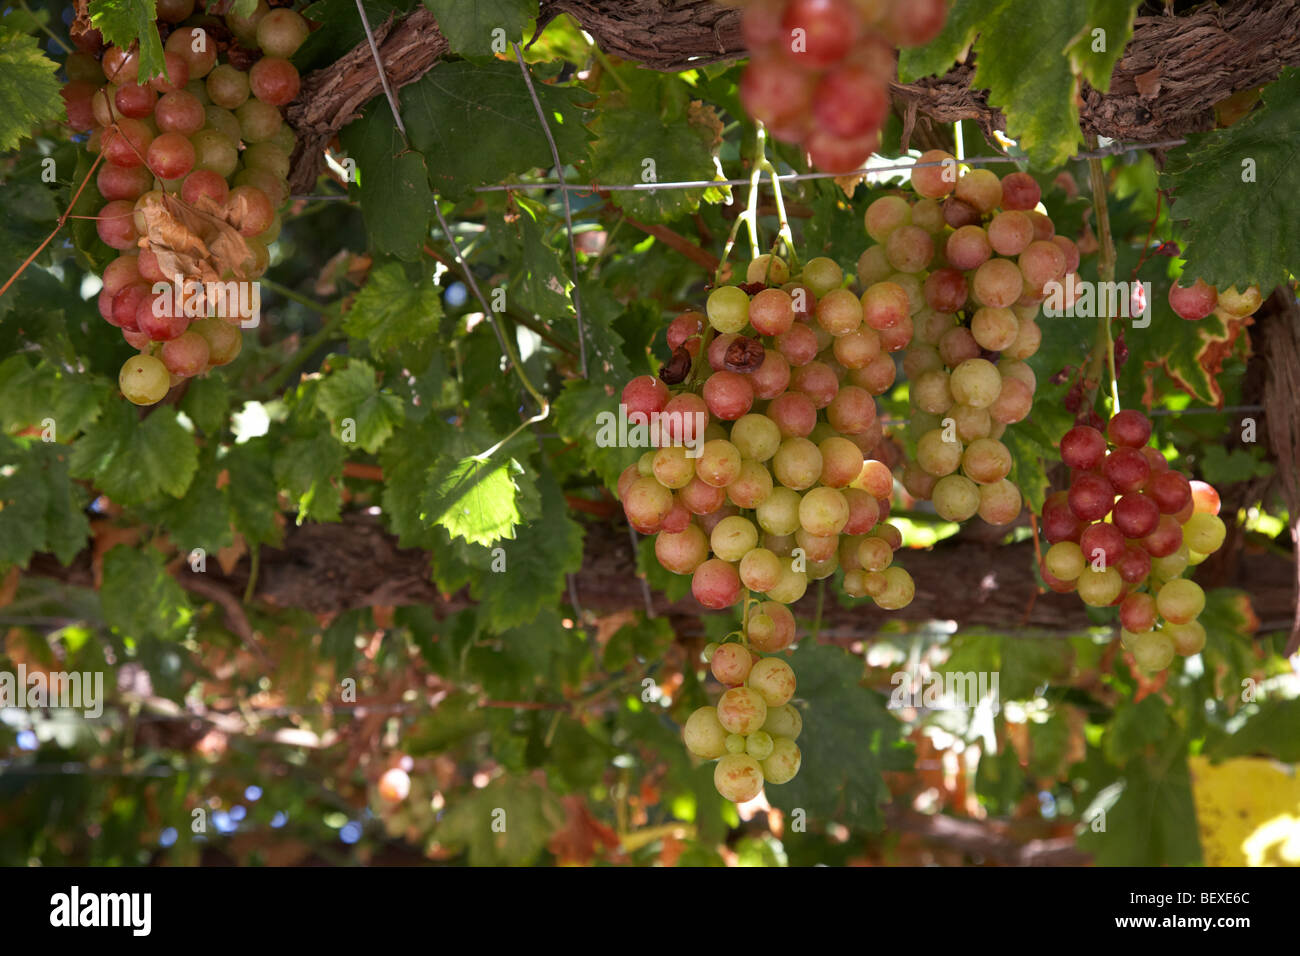 Grappes suspendues au-dessus de la vigne dans les motifs d'une petite exploitation viticole monastique dans les montagnes Troodos république de Chypre Europe Banque D'Images